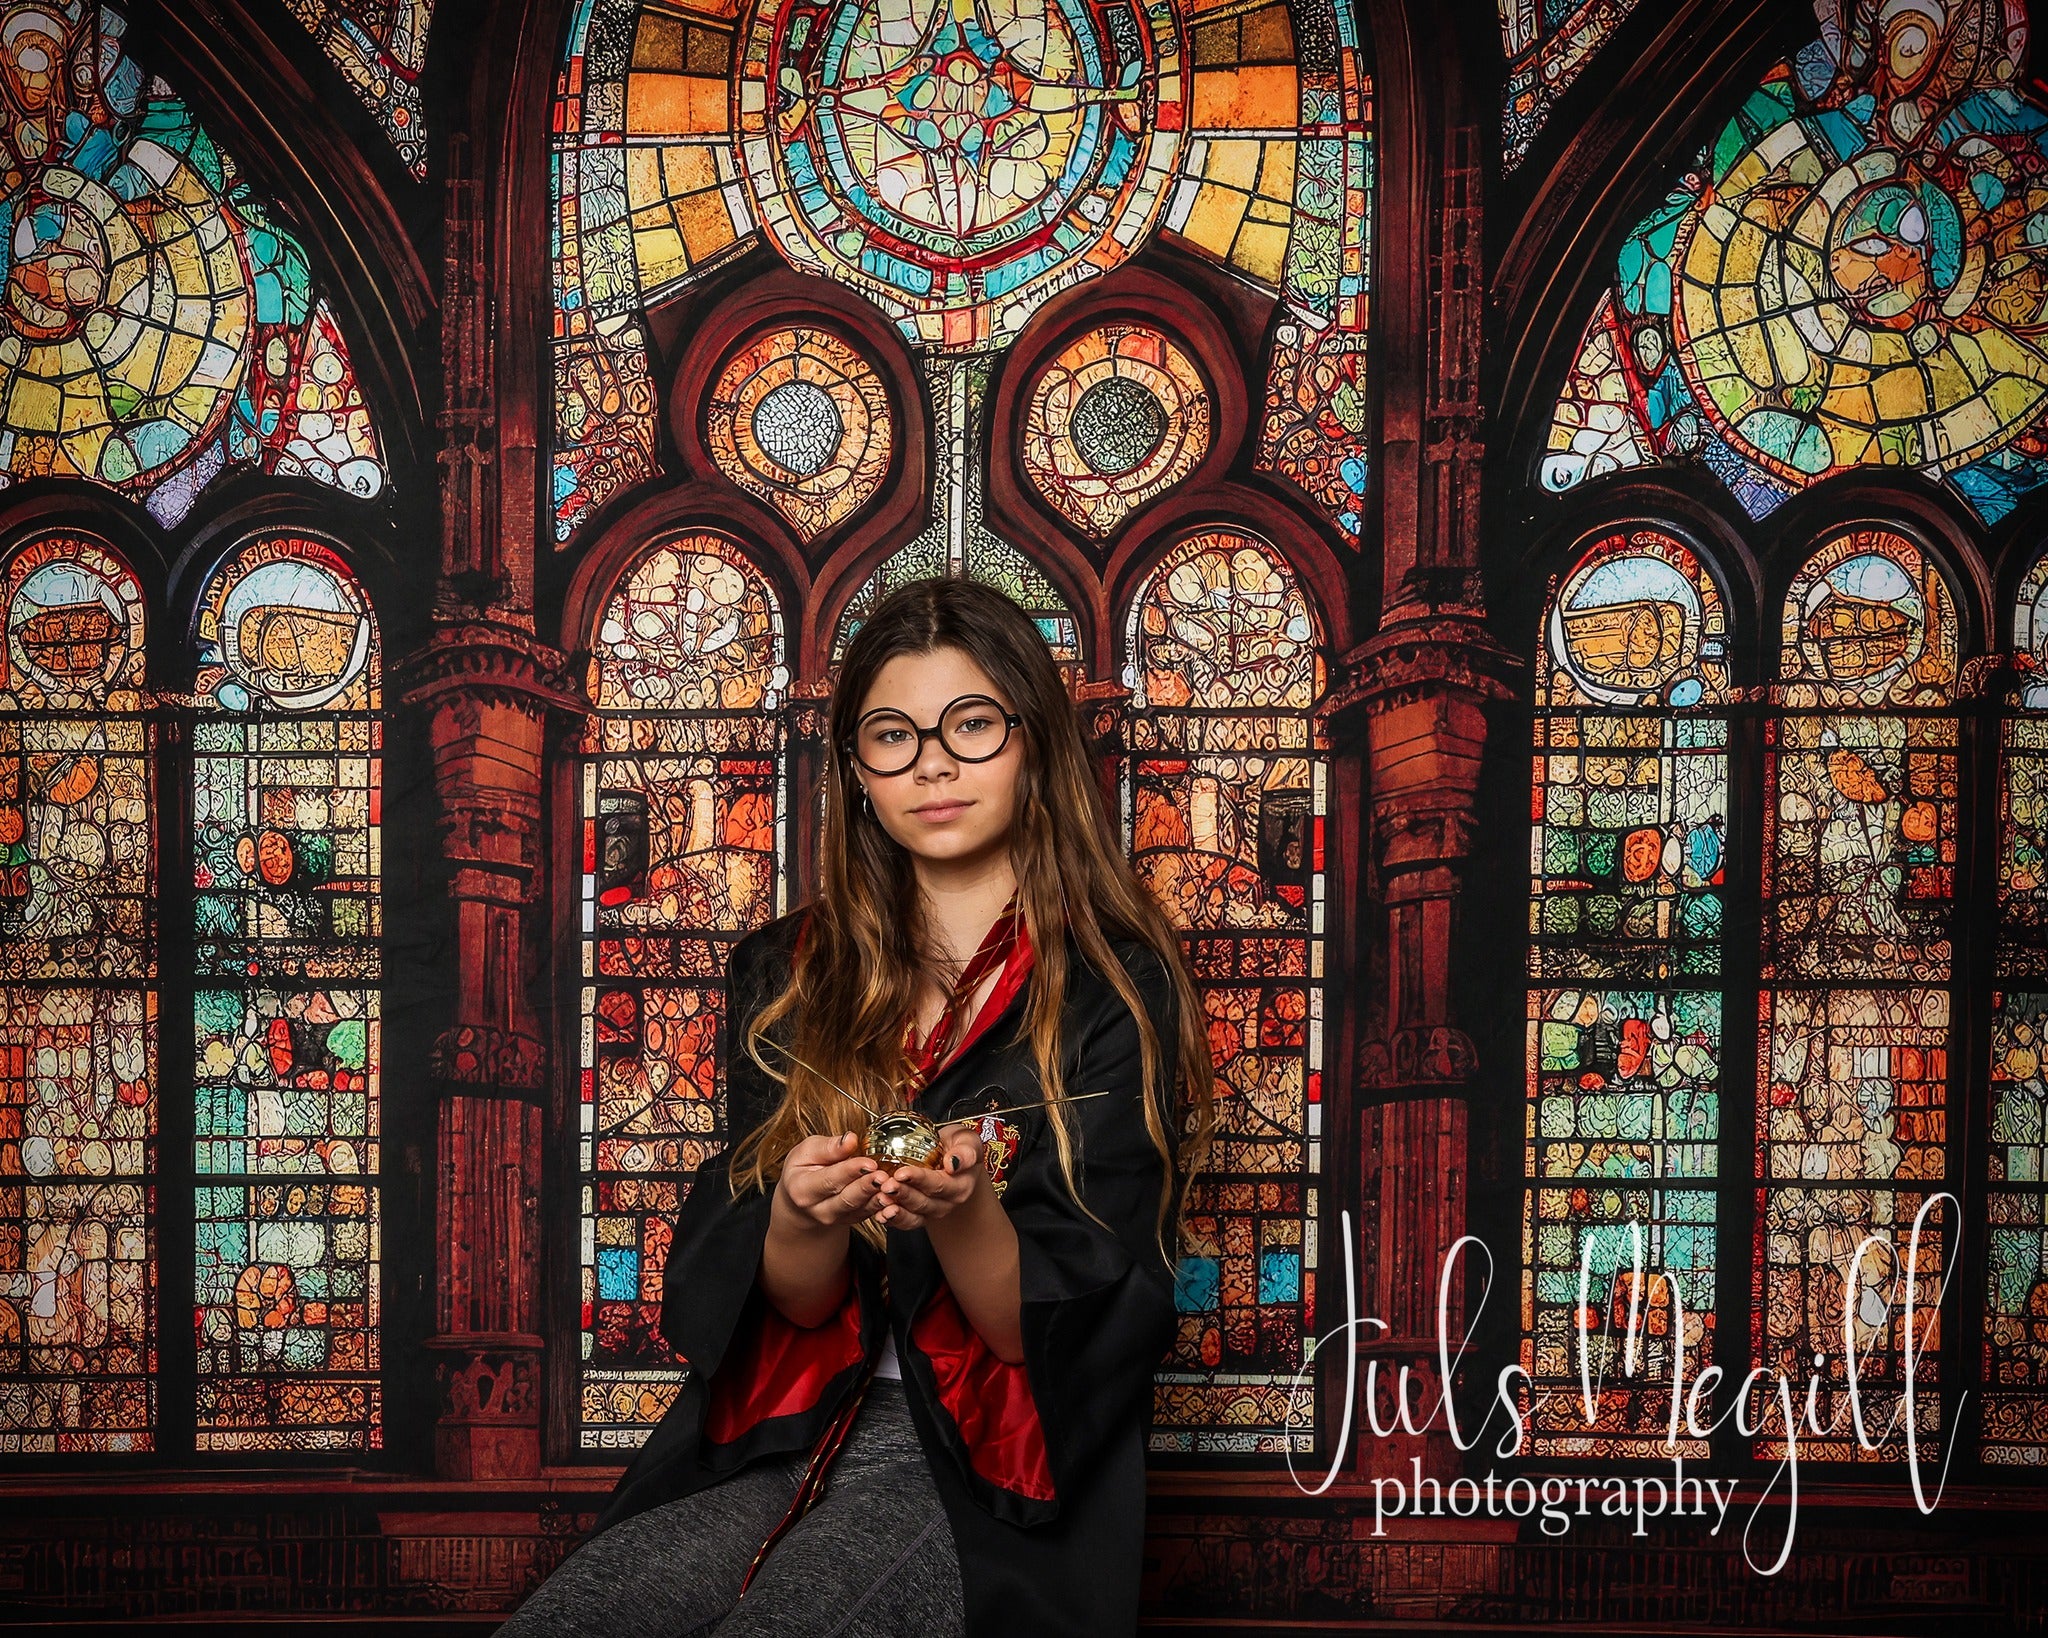 Kate Gotische gewölbte Glasmalerei Fenster Hintergrund von Mandy Ringe Fotograf